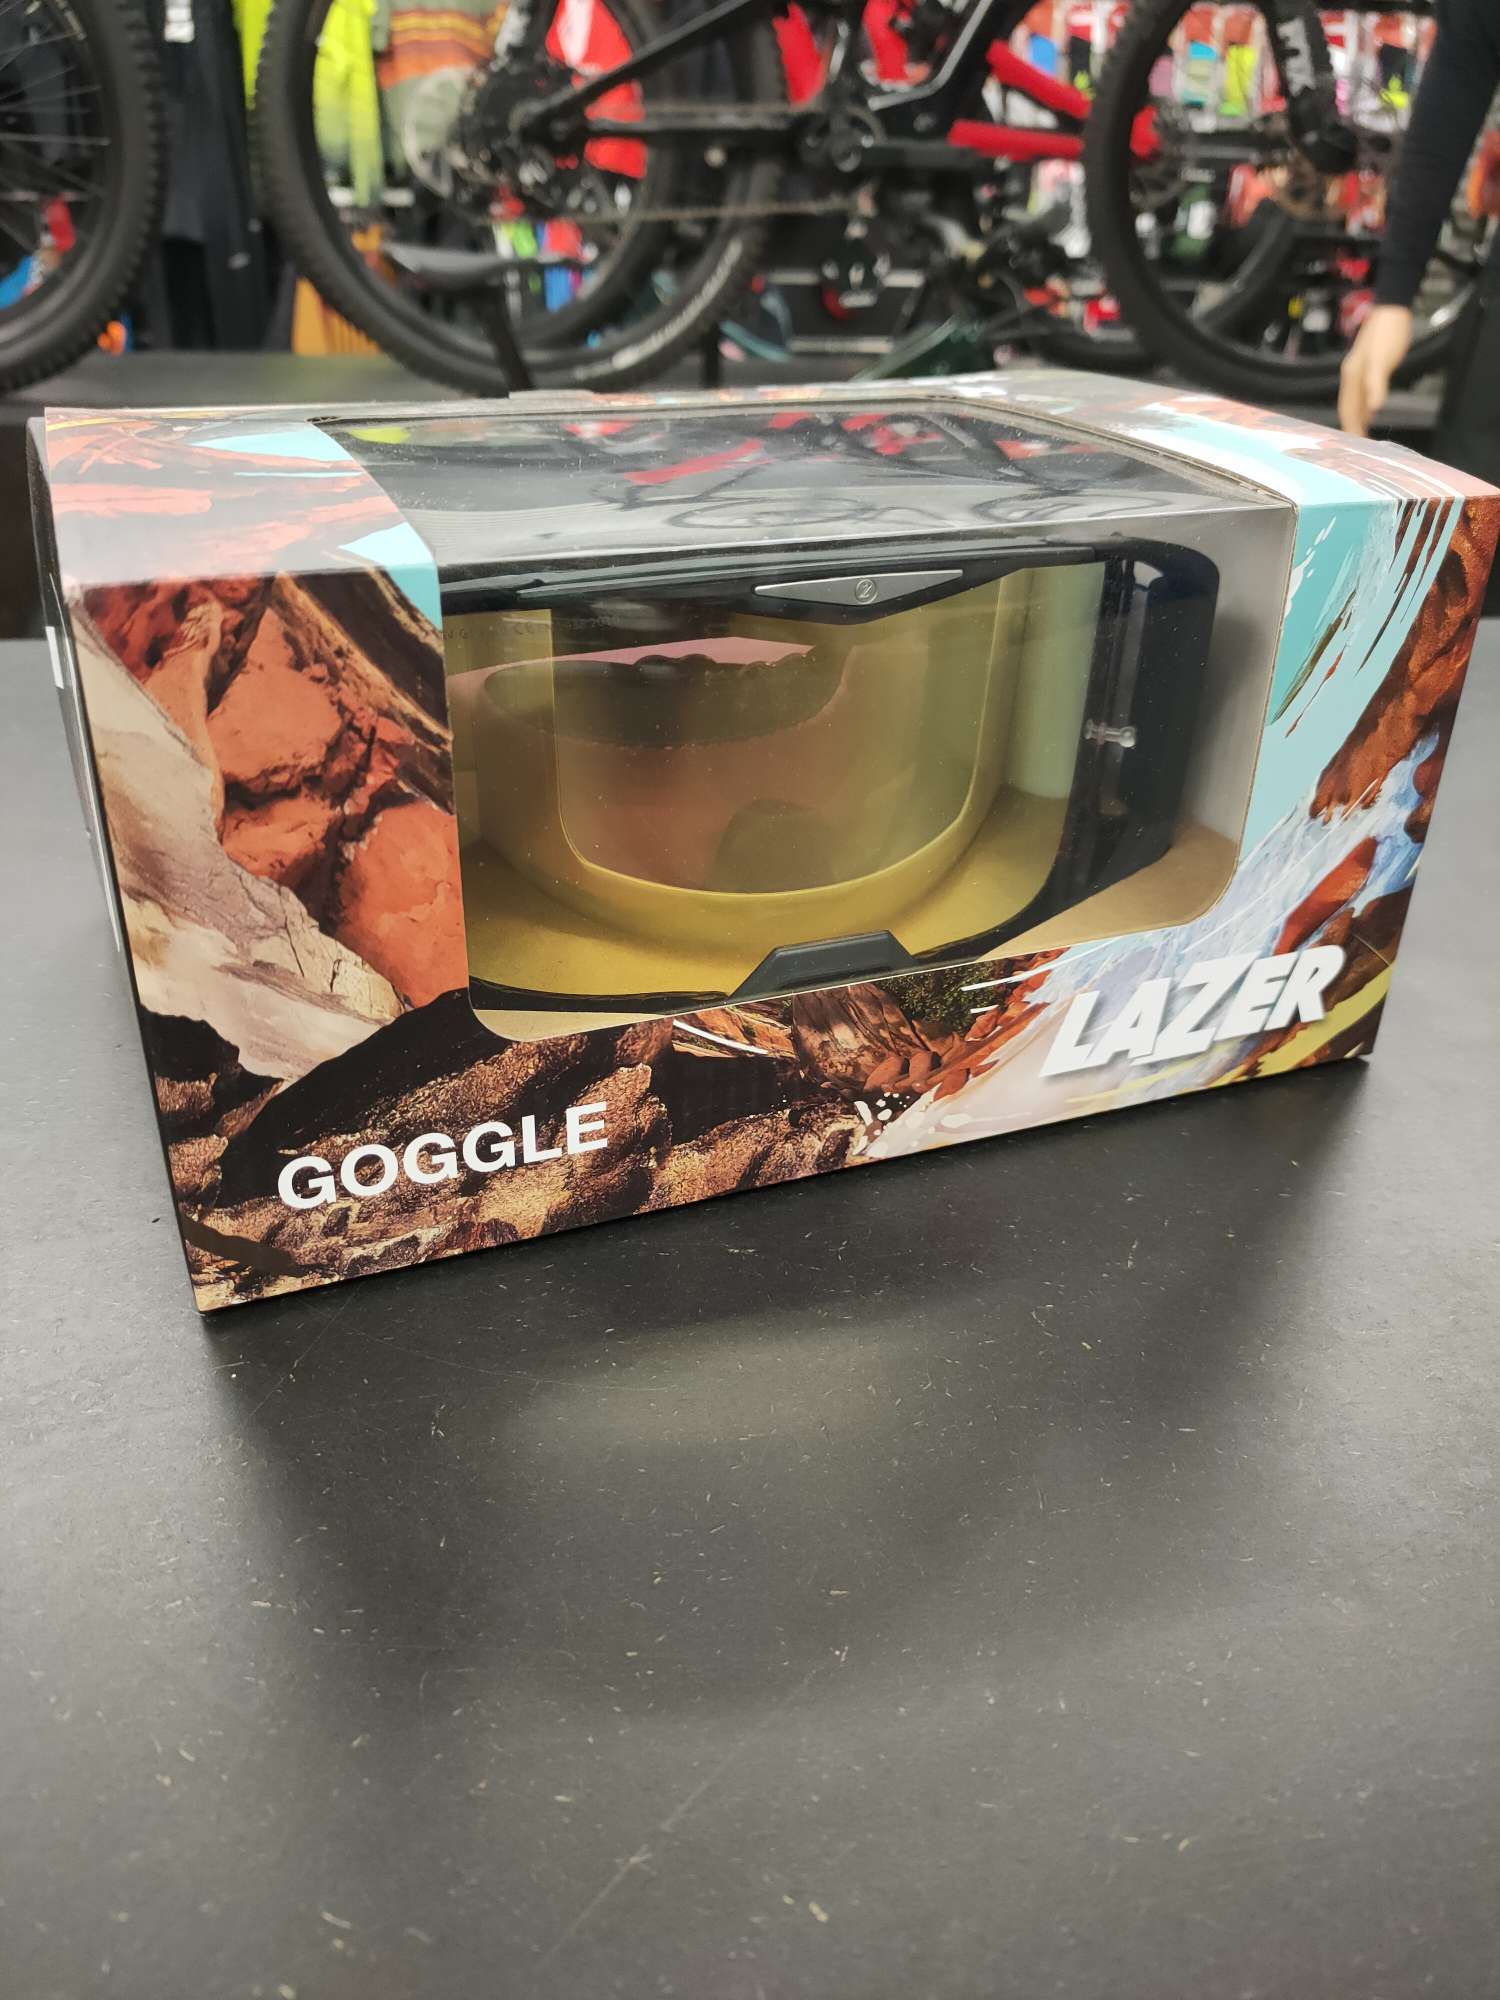 Lazer goggle